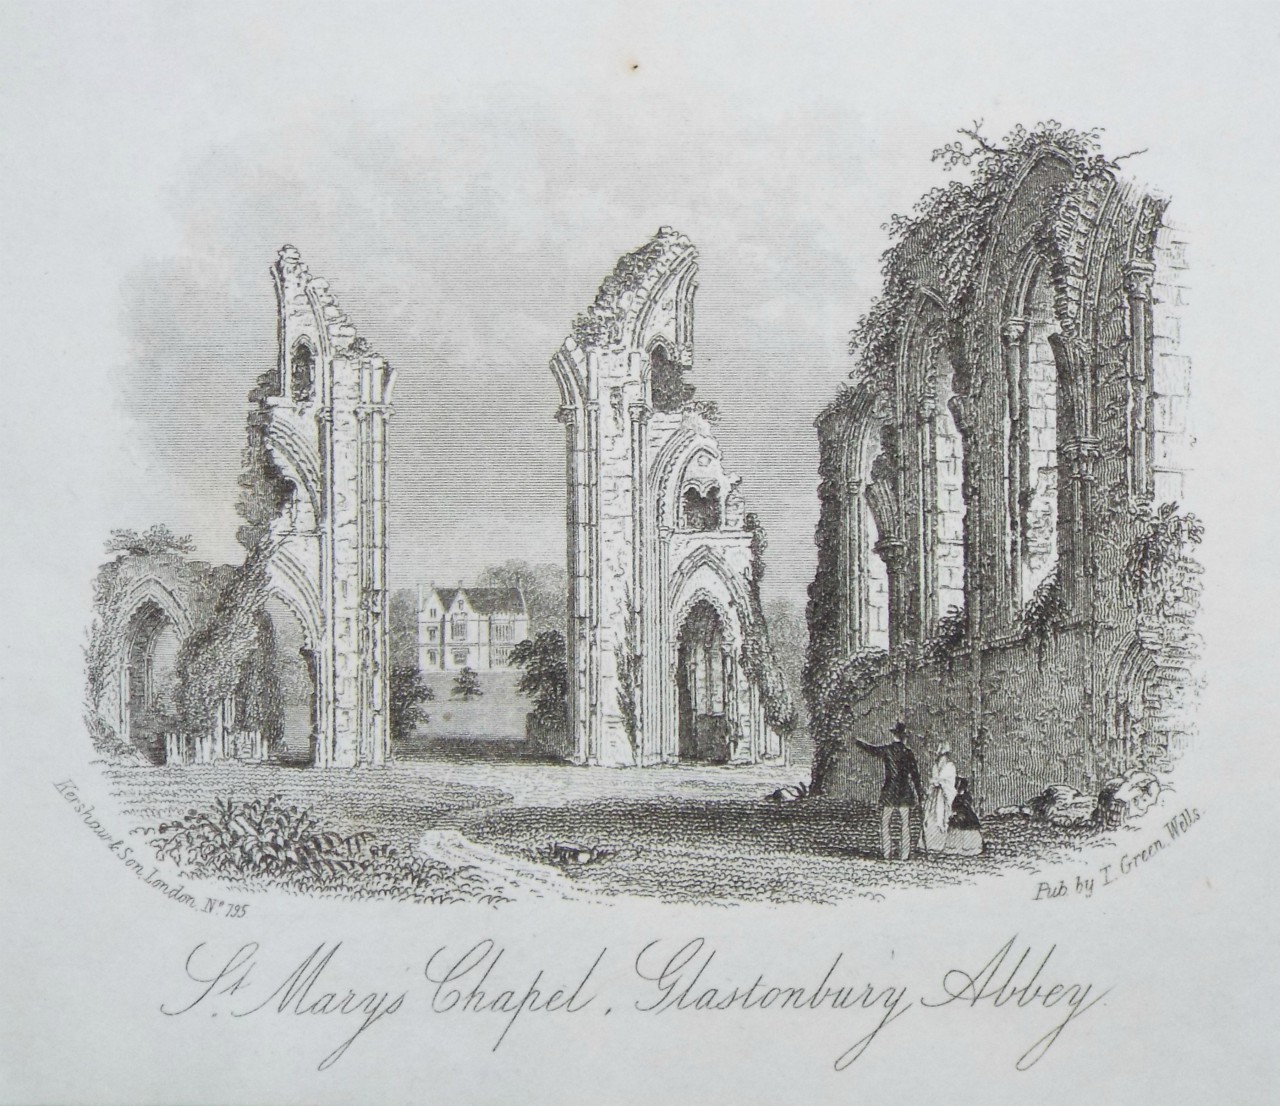 Steel Vignette - St. Marys Chapel, Glastonbury, Abbey. - Kershaw